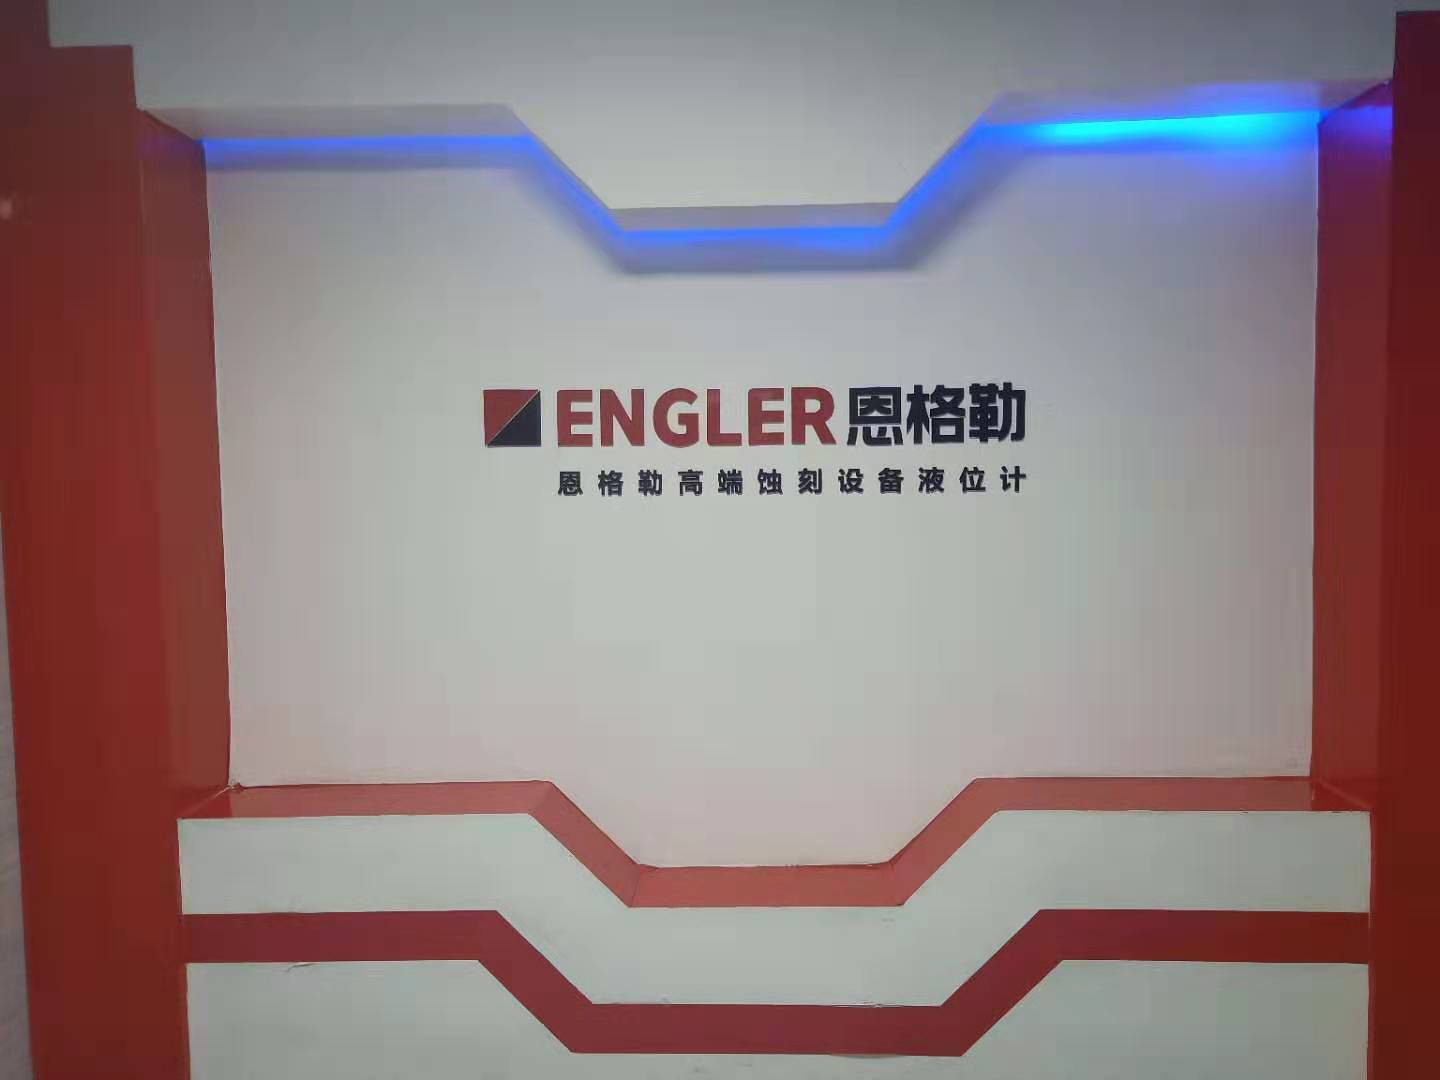 北京ENGELR公司的磁致伸缩液位计具有创造性和权威性